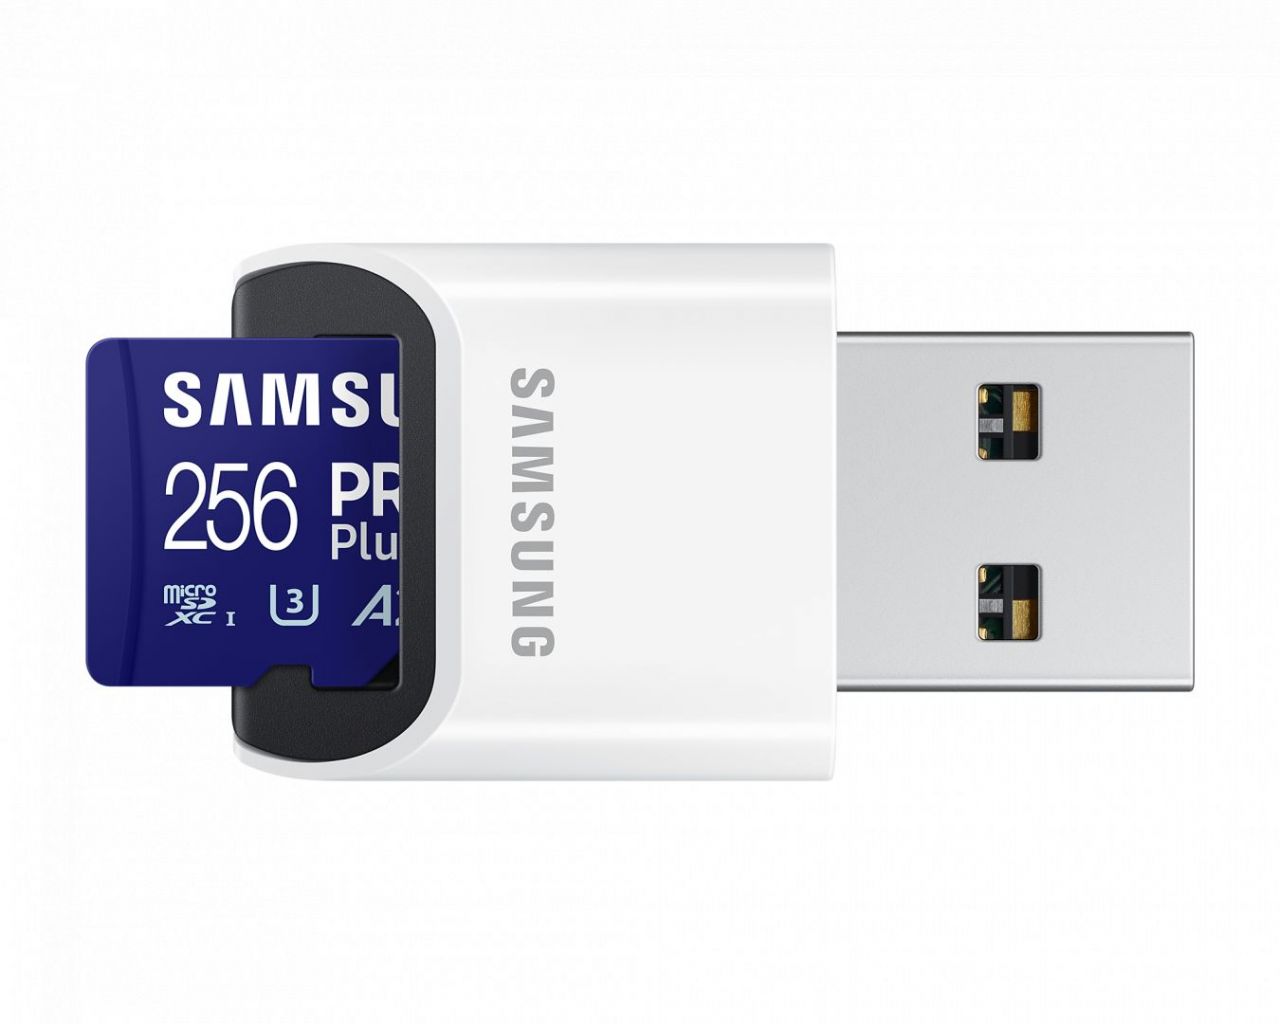 Samsung 256GB microSDXC Pro Plus Class10 U3 A2 V30 + USB adapterrel